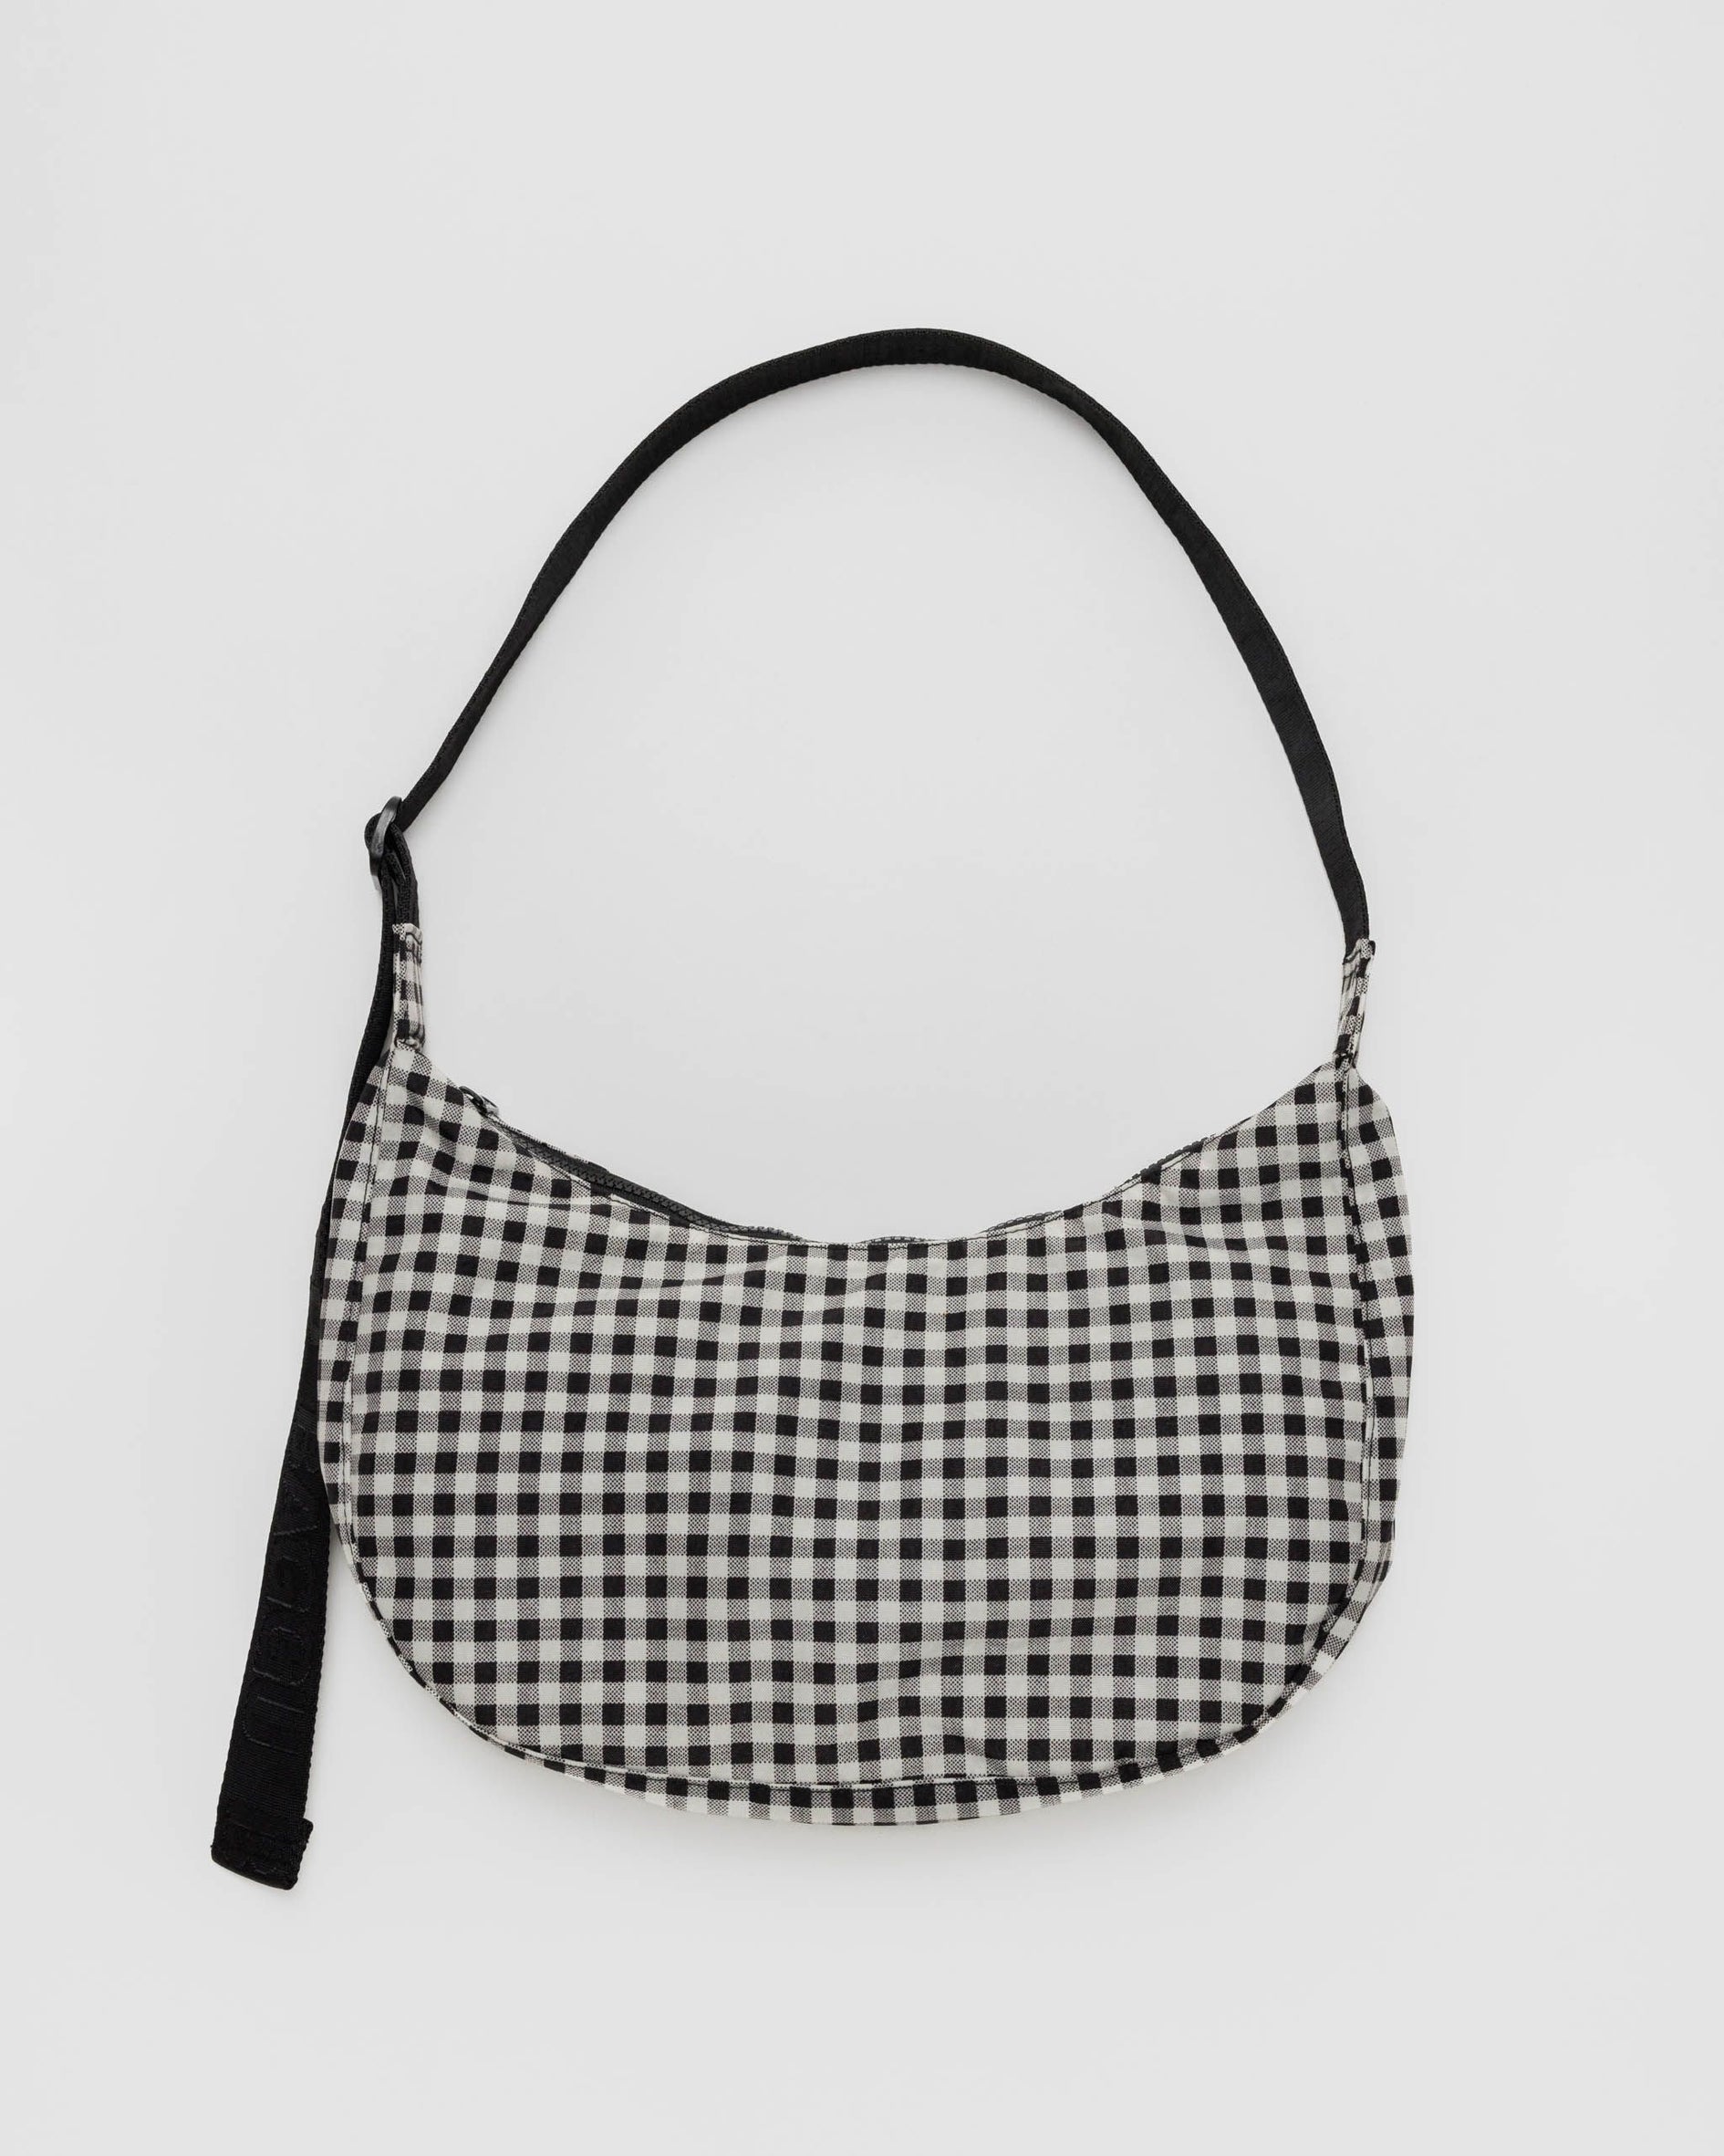 Medium Nylon Crescent Bag, Black & White Gingham